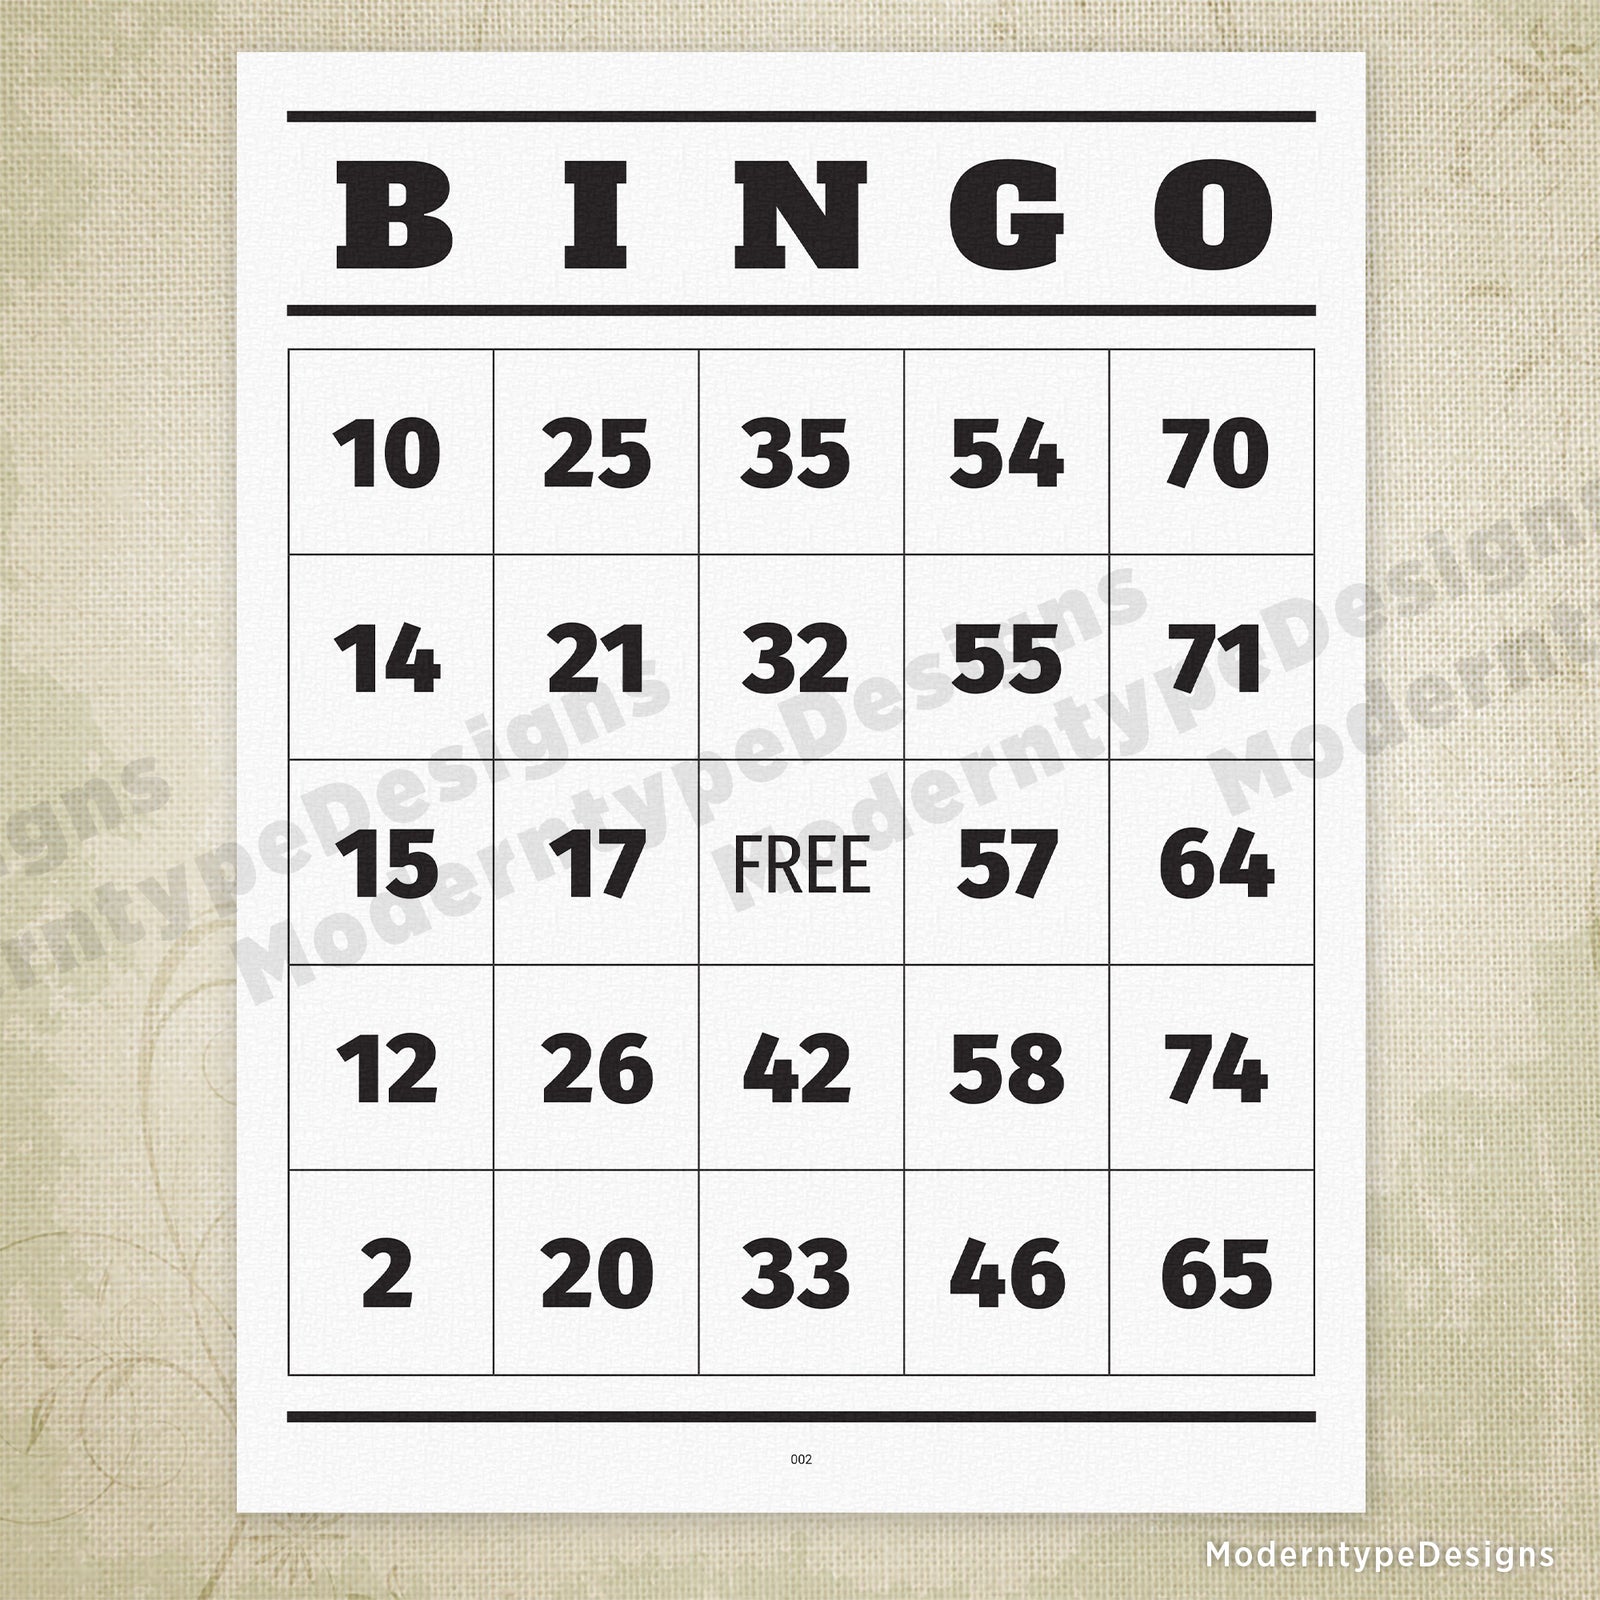 bingo caller card 1 75